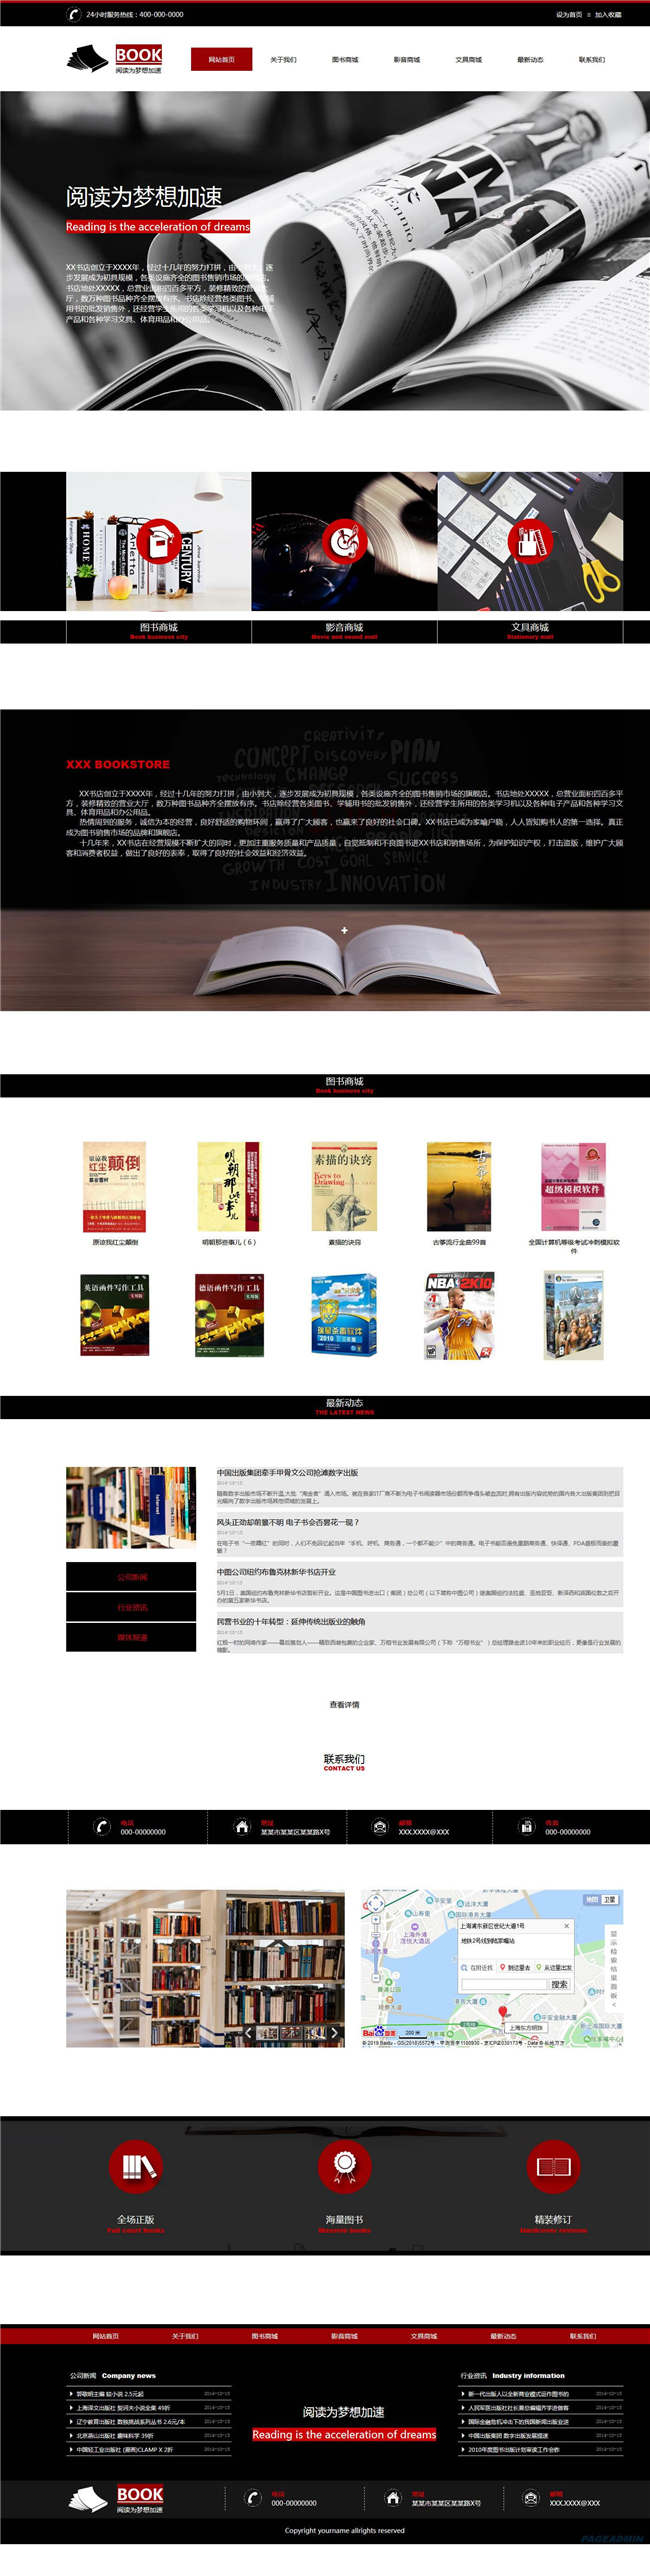 书店官方文教书籍文化曲艺书店网站WP整站模板(含手机版)预览图